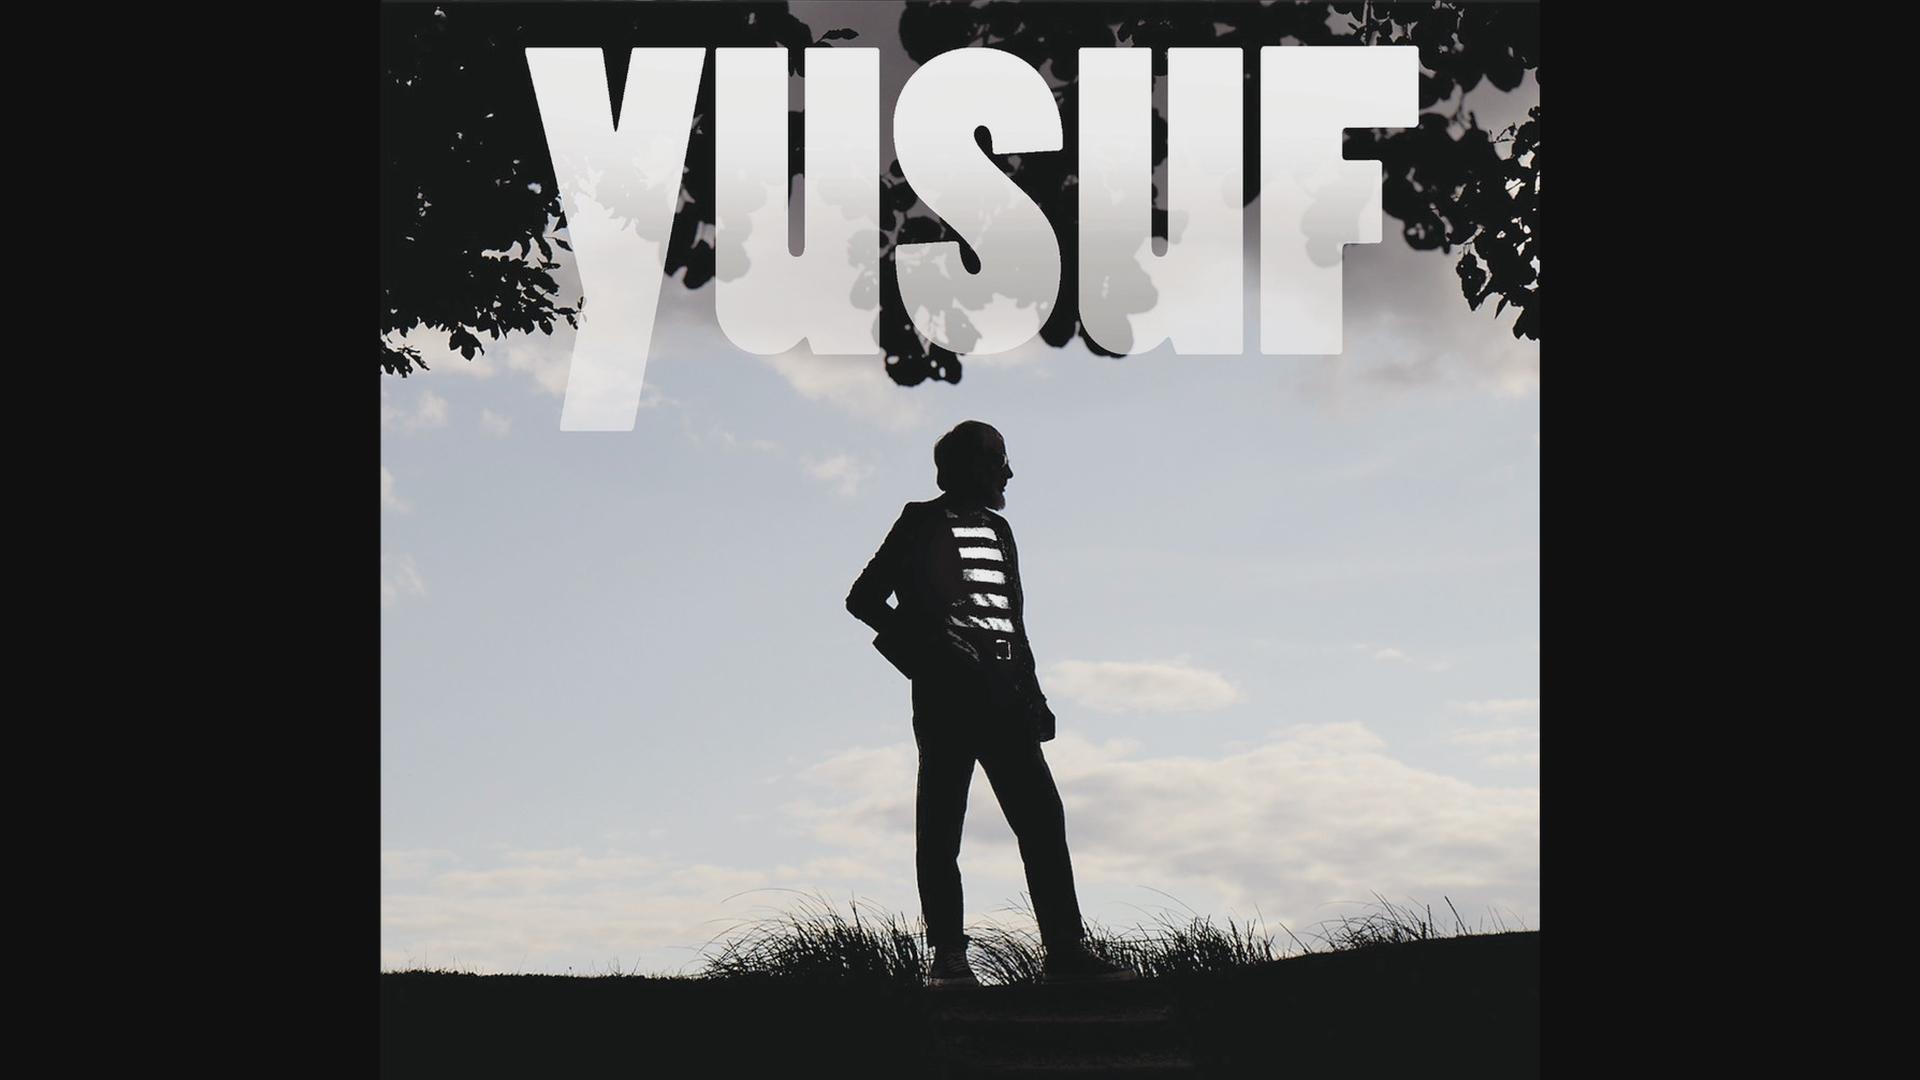 Yusuf / Cat Stevens - Yusuf Tell Em I M Gone , HD Wallpaper & Backgrounds